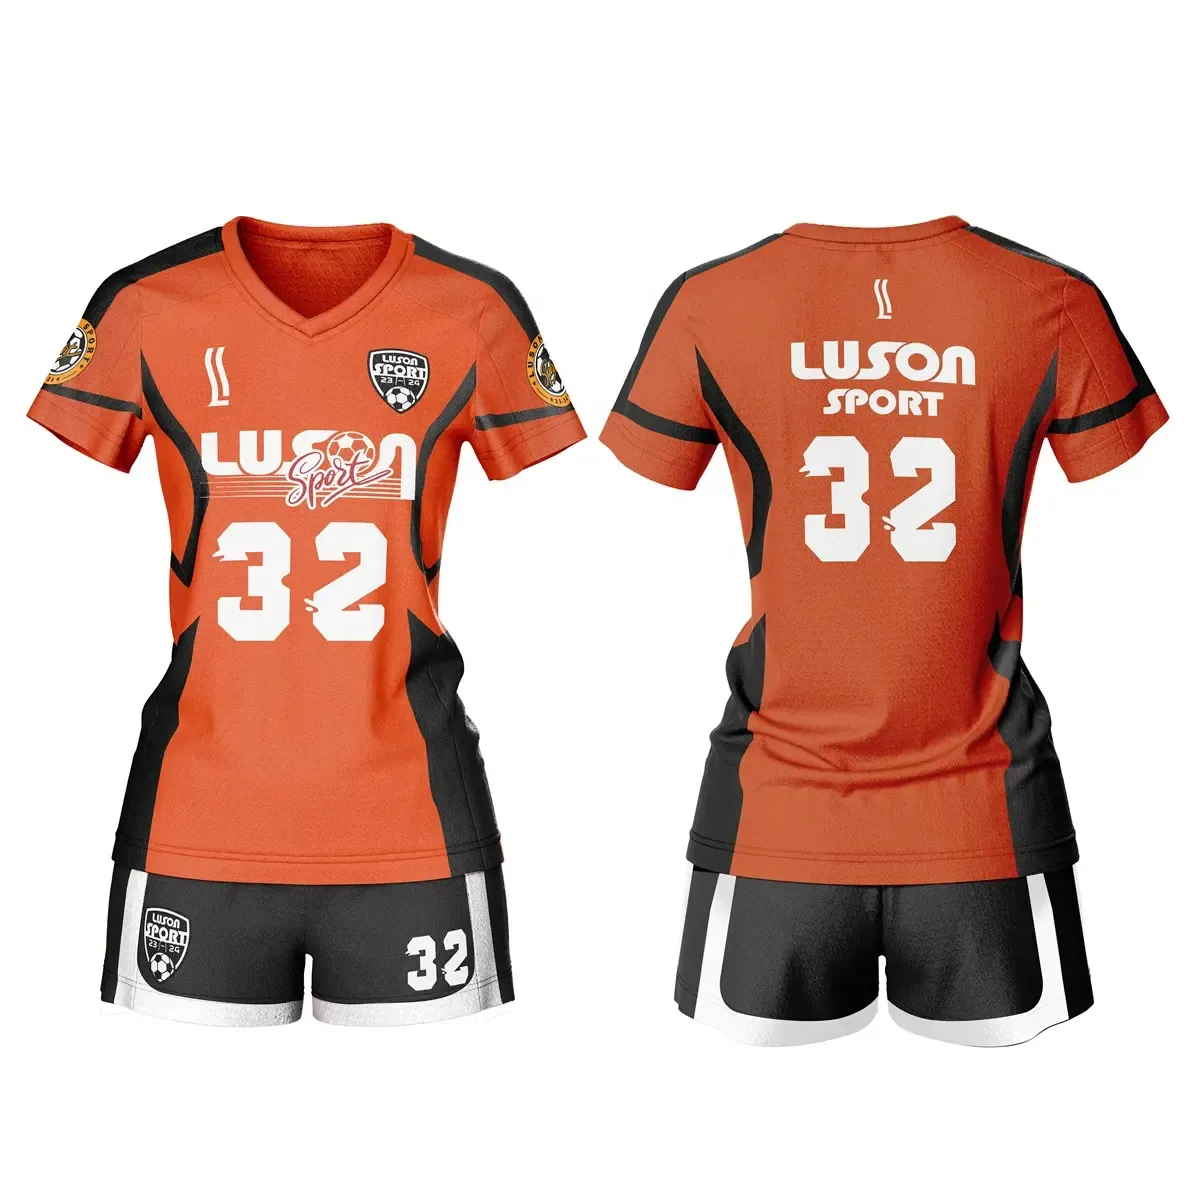 Camiseta de fútbol de calidad Original LUSON, Conjunto de camiseta de ropa de fútbol, uniforme de fútbol, camiseta de fútbol personalizada sublimada